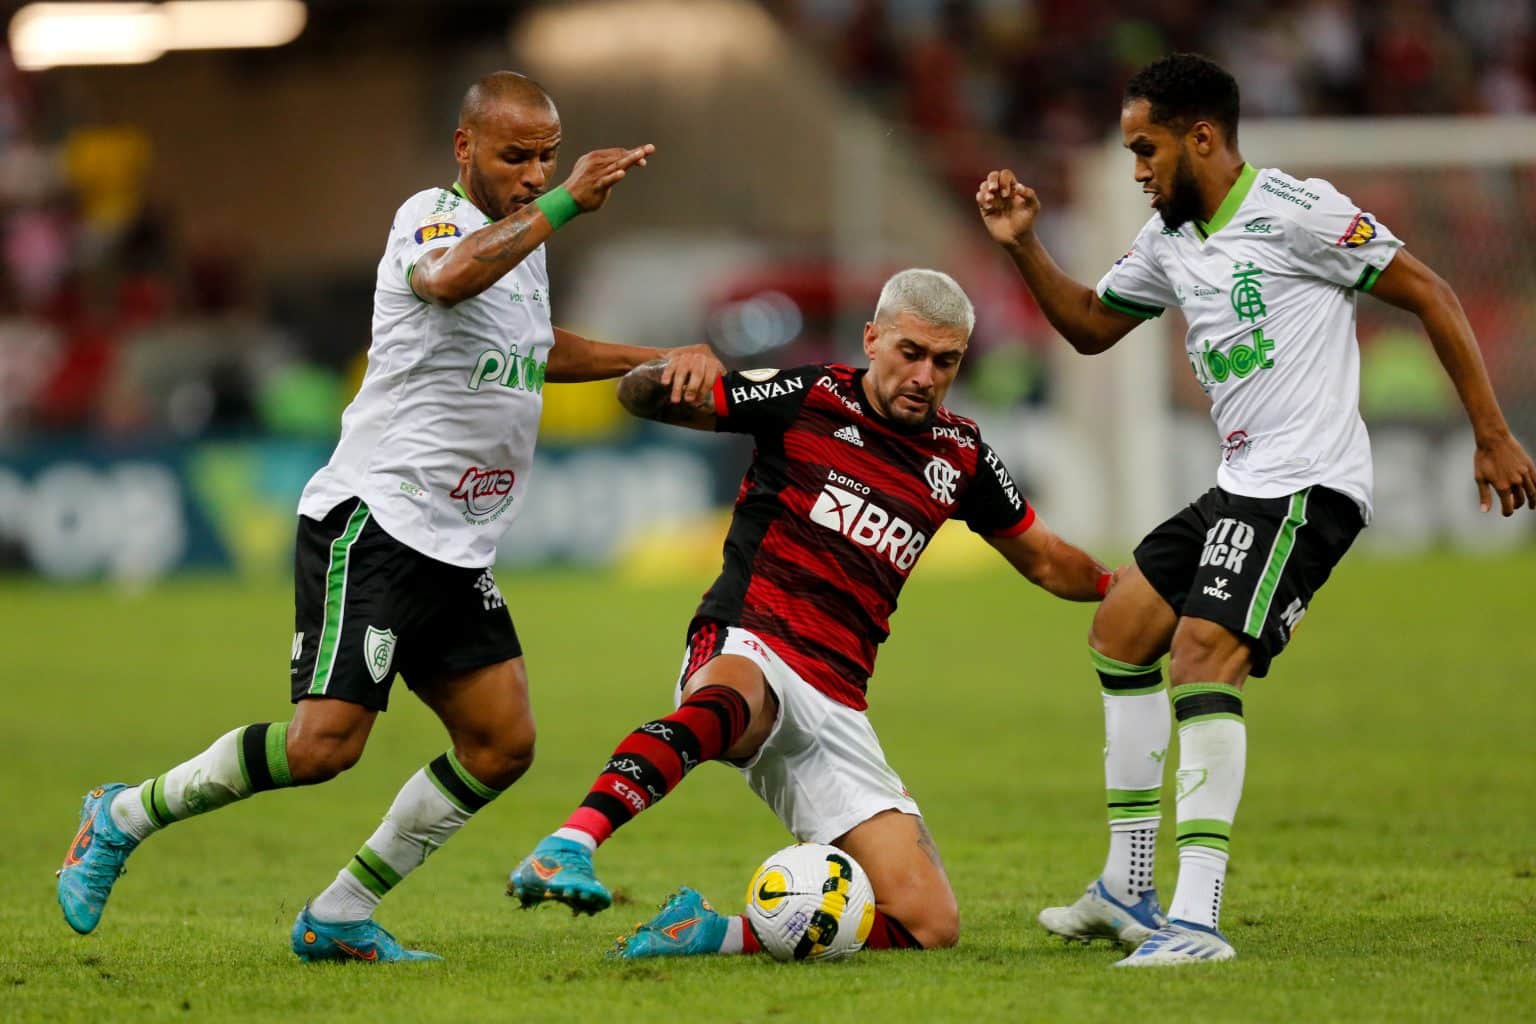 Interdição para jogo entre Flamengo e América-MG, pelo Brasileirão, no Maracanã